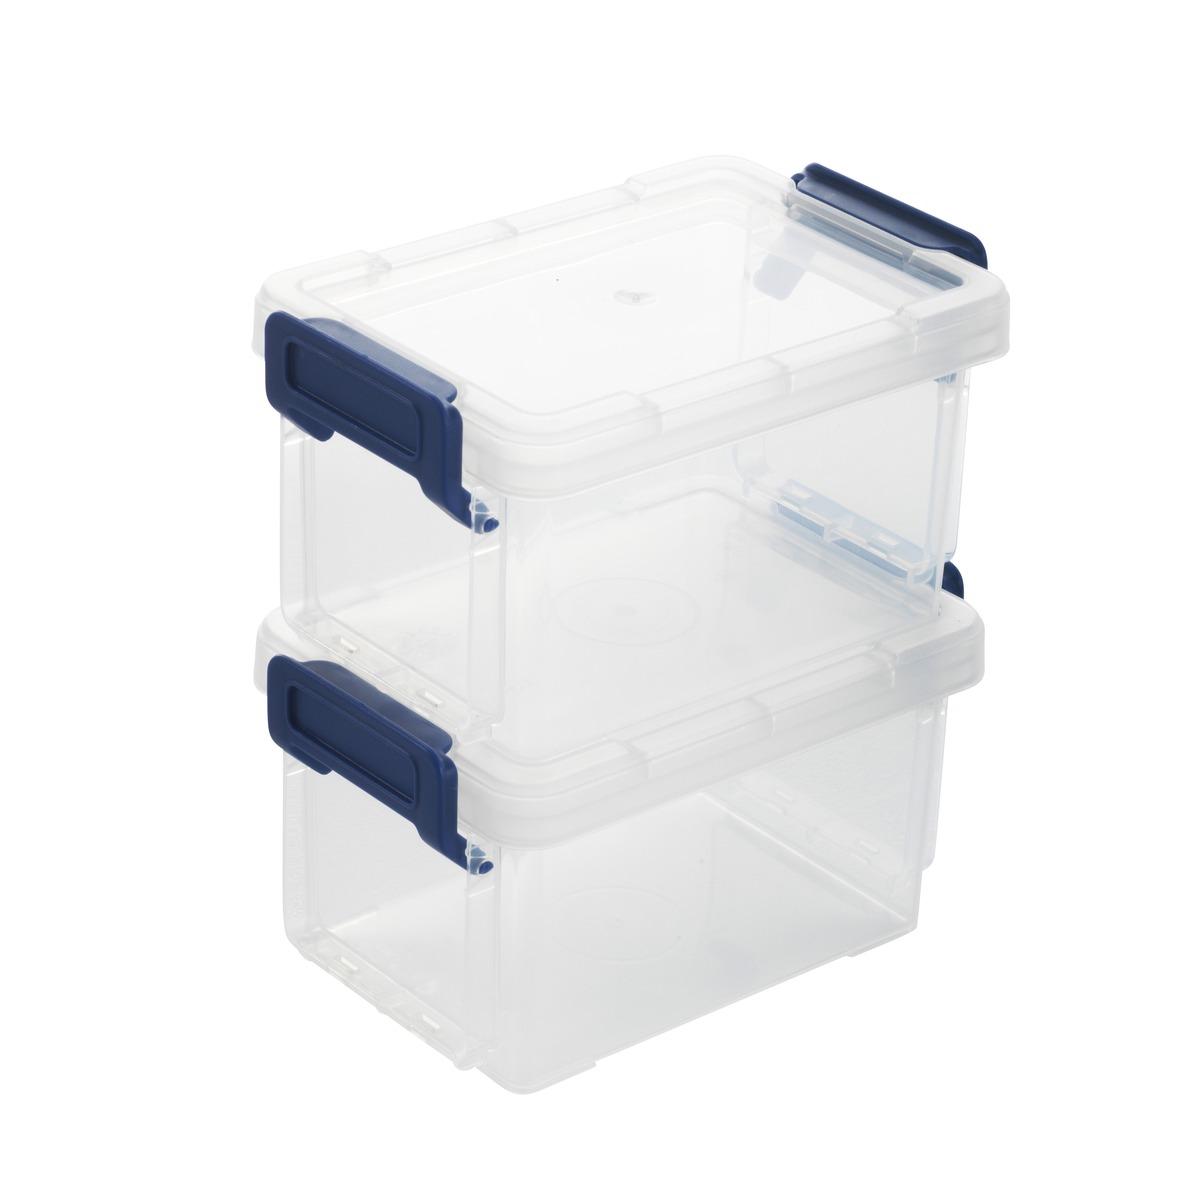 Les 2 multibox de rangement connectables en plastique - 0,3 litres - bleu, transparent